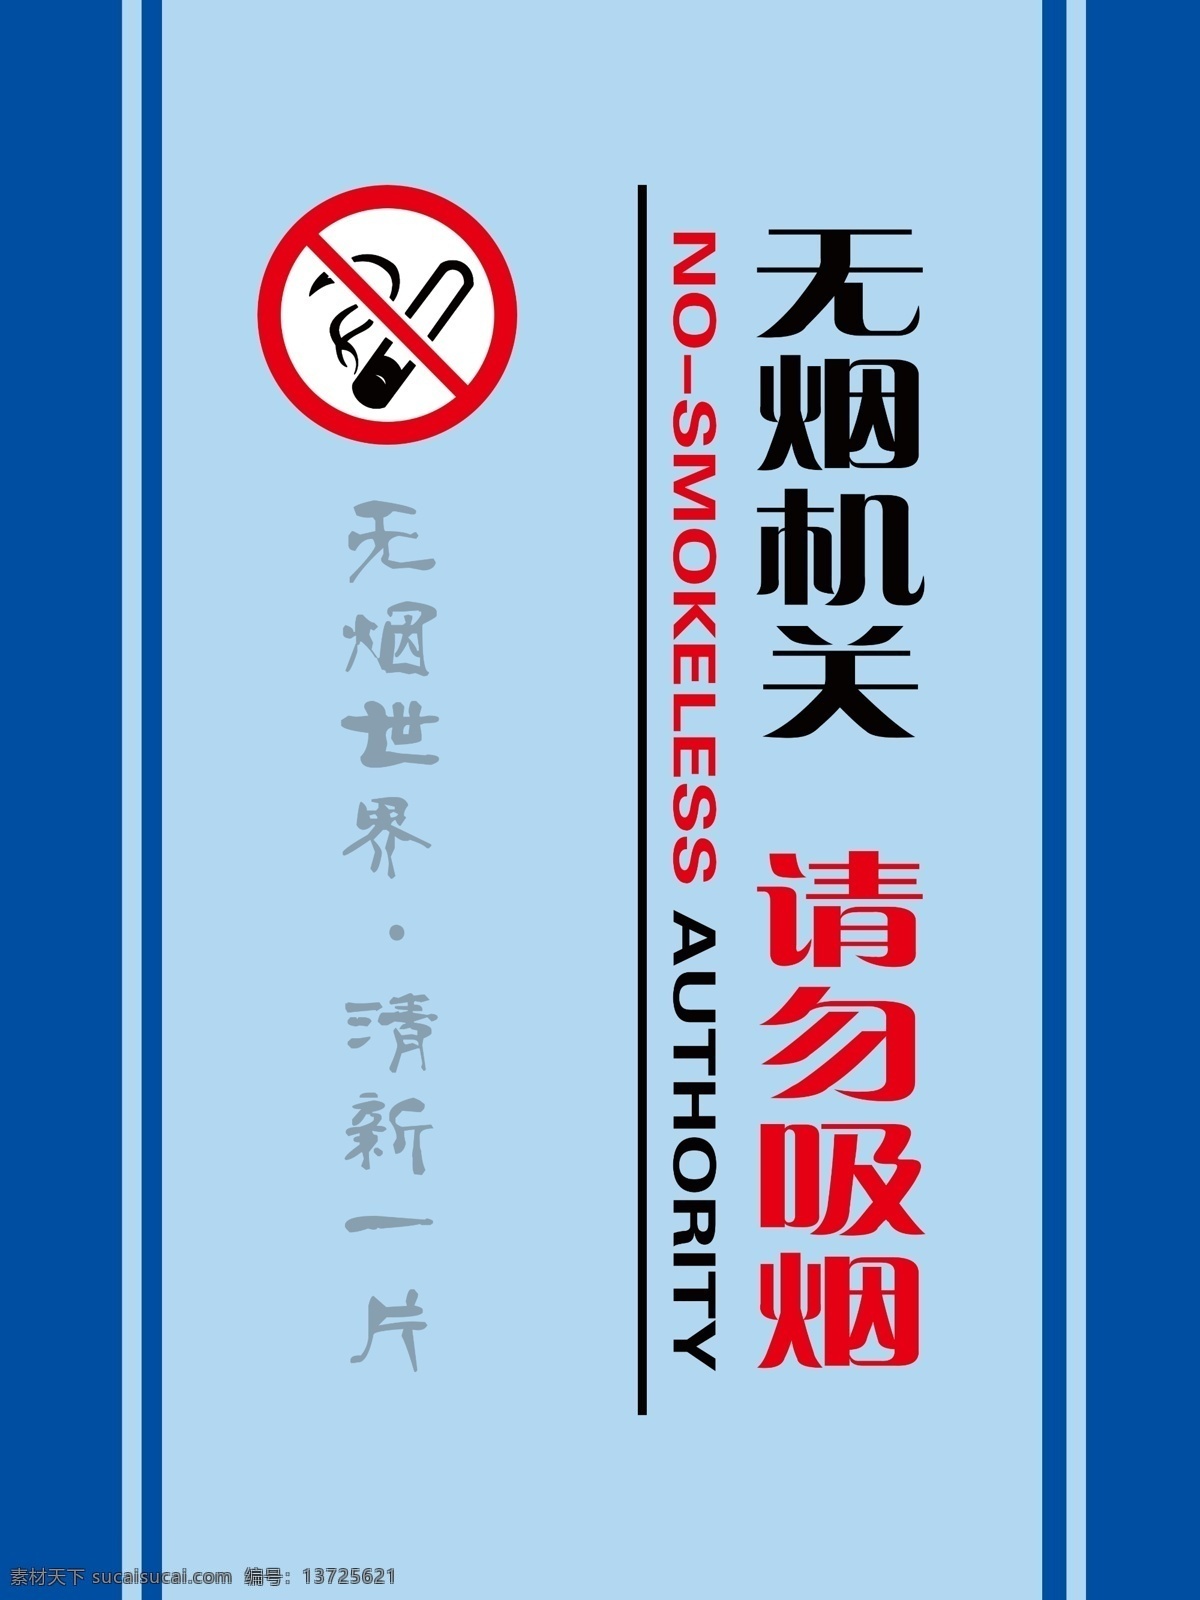 请勿吸烟 吸烟标志 英文翻译 无烟世界 清新一片 广告制作 青色 天蓝色